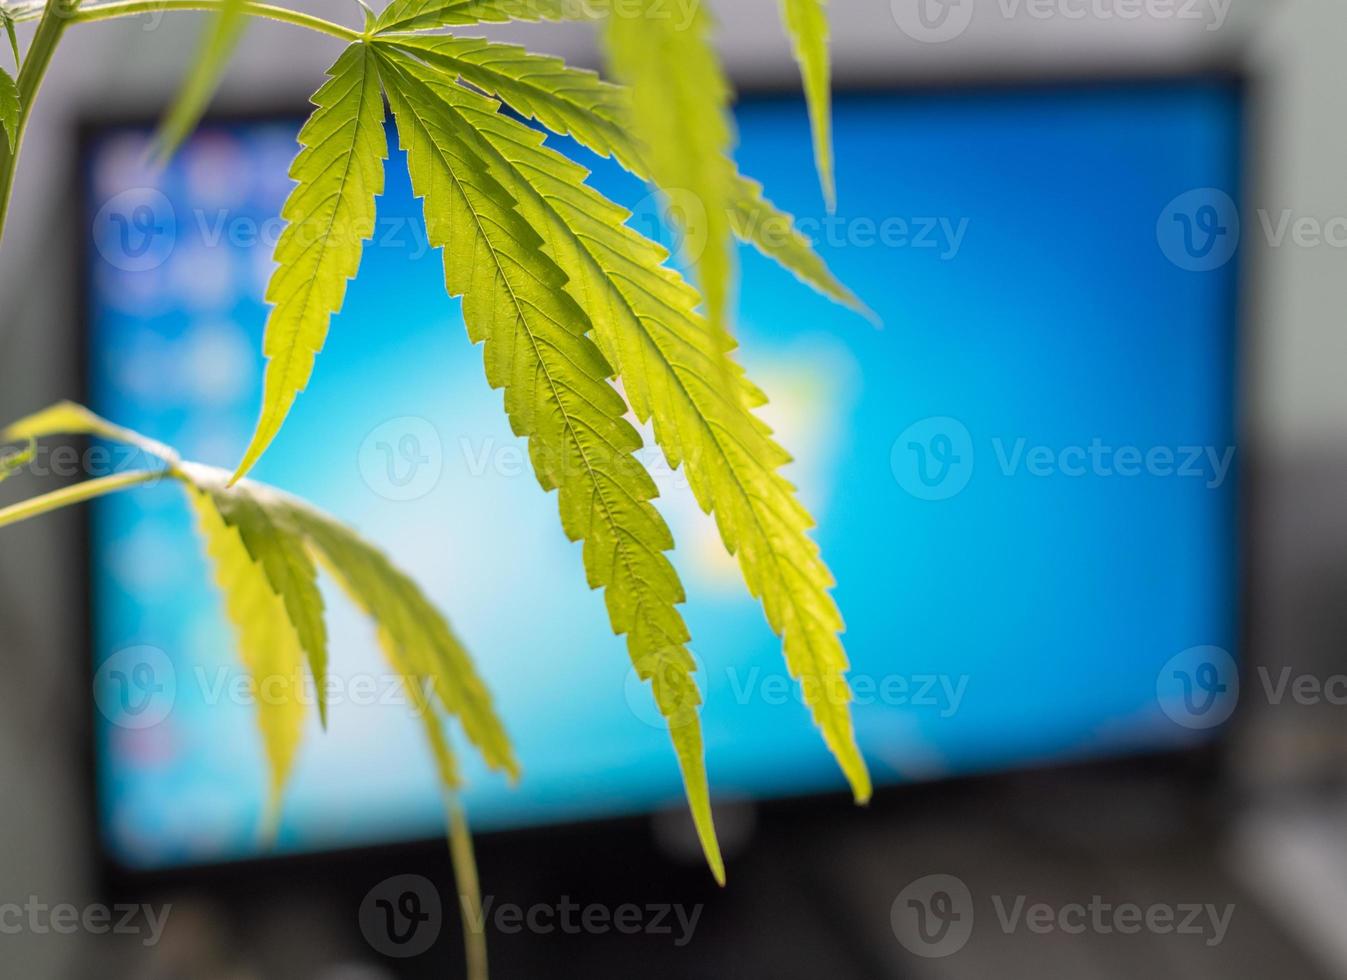 cannabisblad och den blå skärmen på datorn. foto